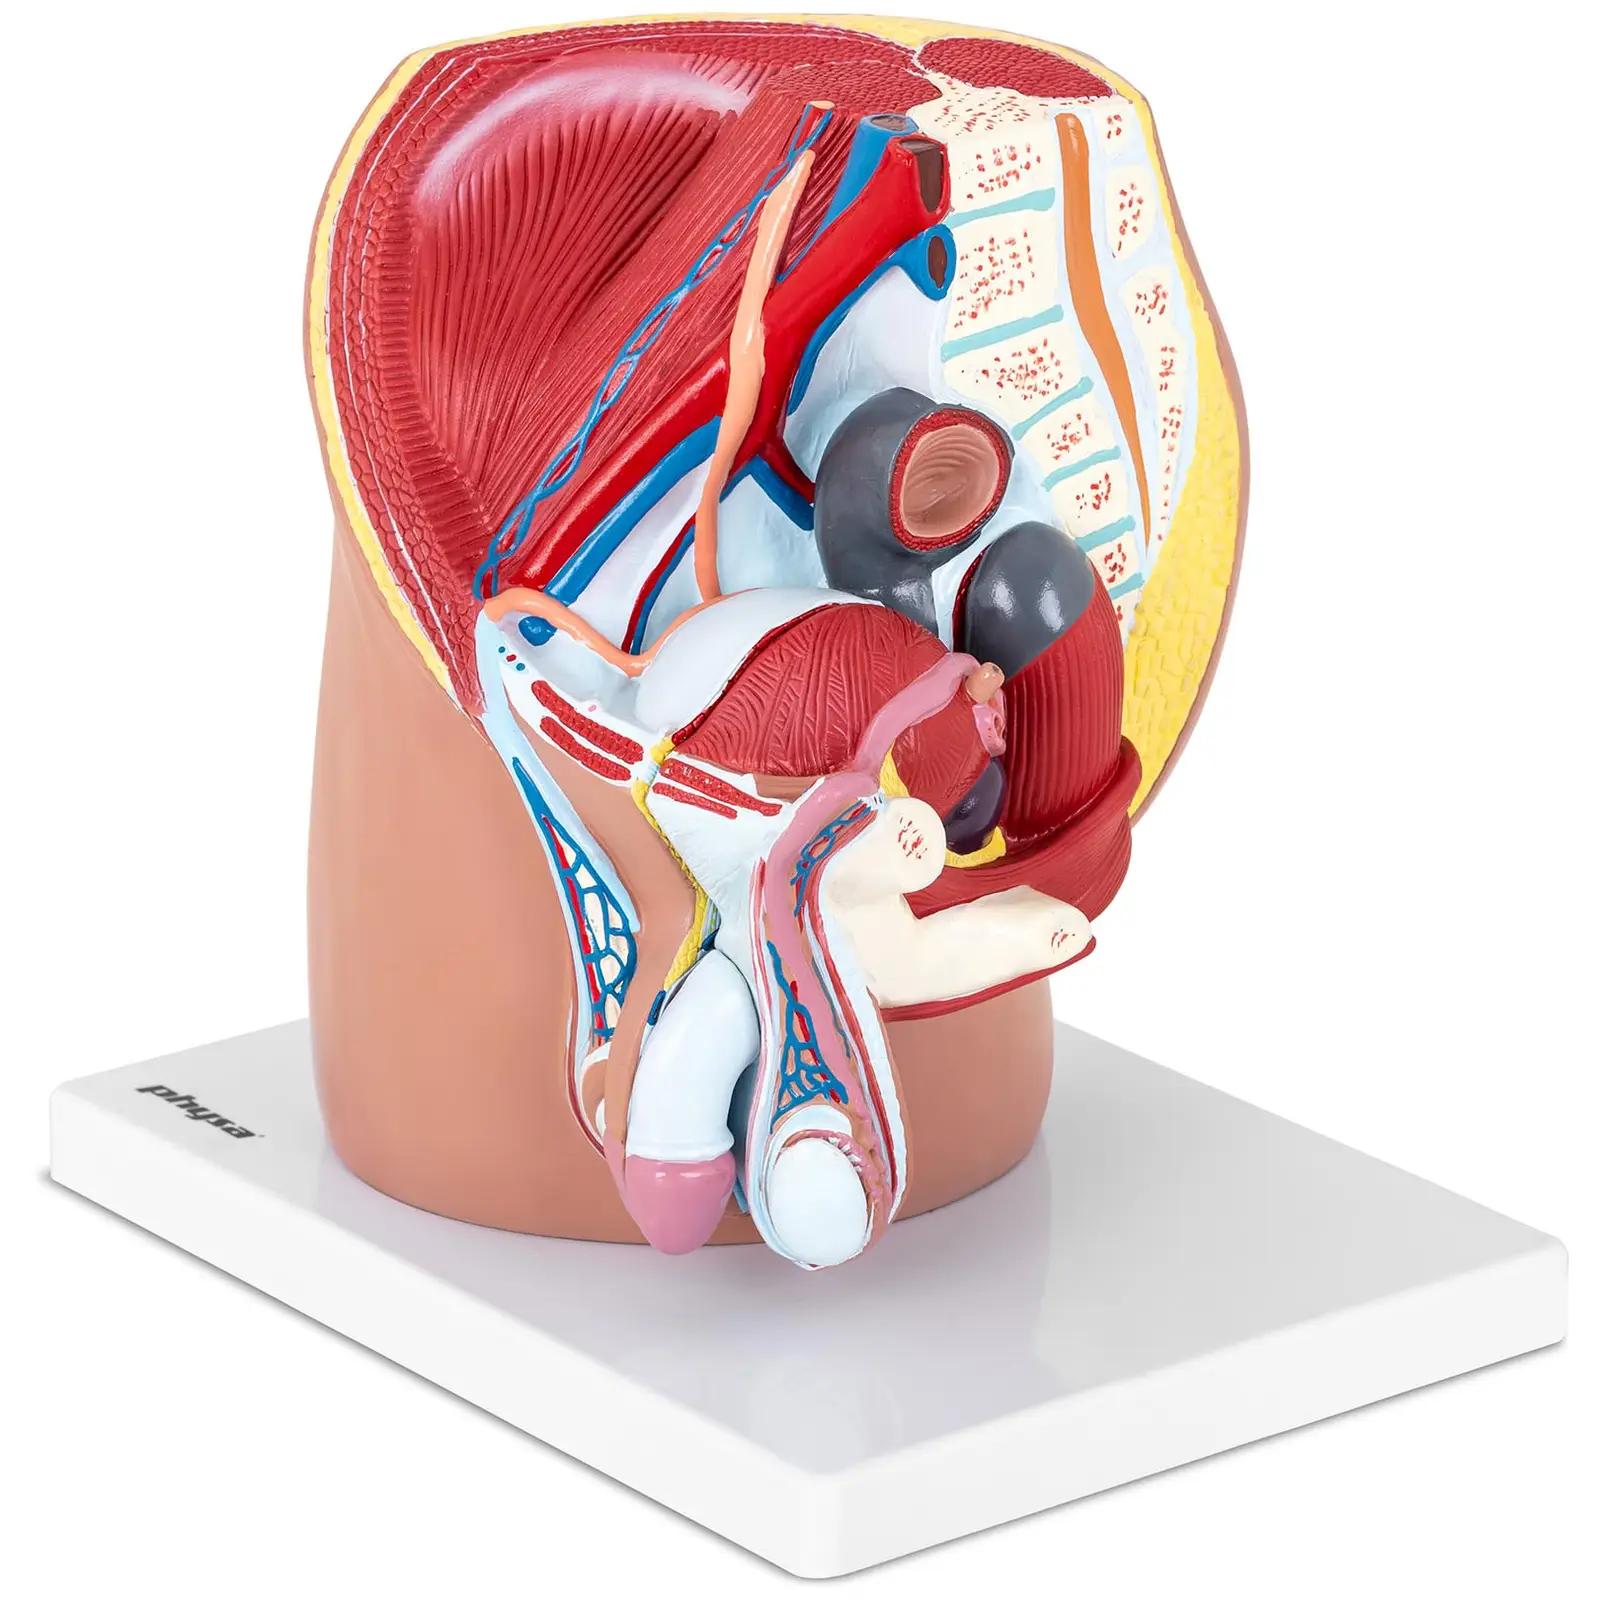 Anatomisk modell av mannlig kjønnsorgan - 4 separate deler - originalstørrelse